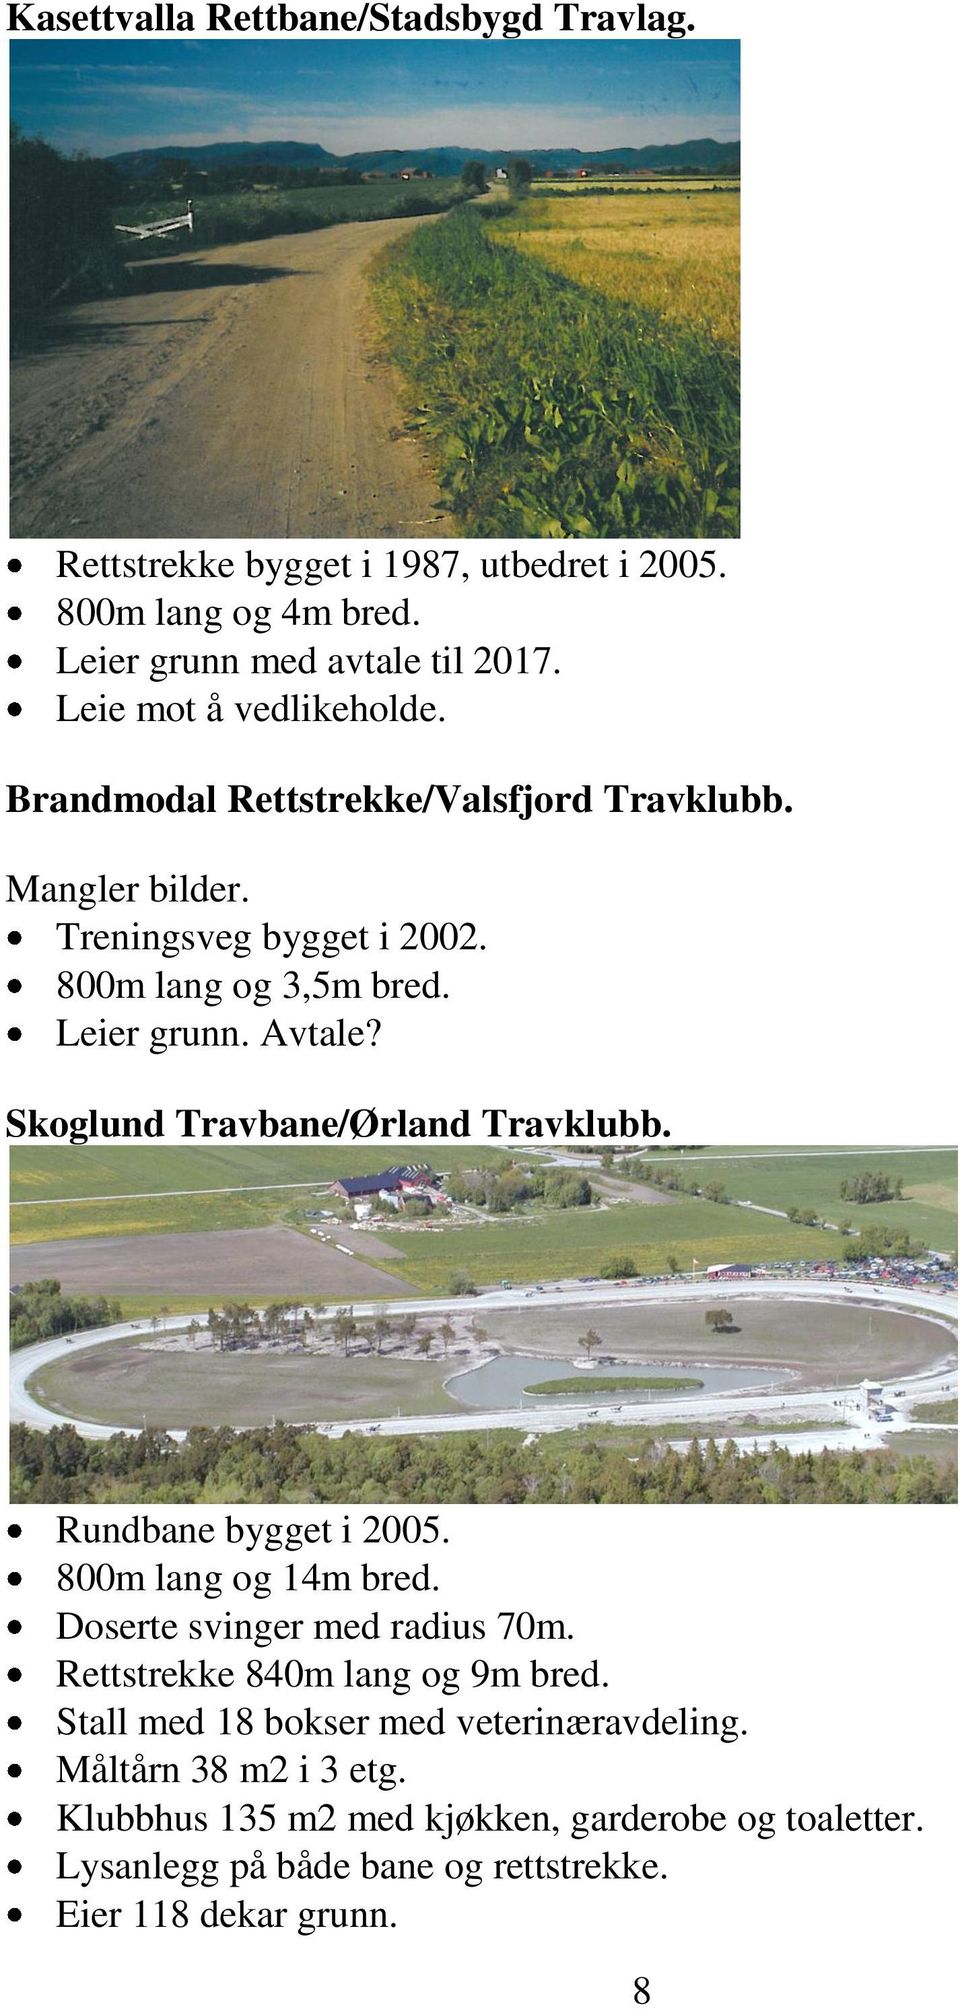 Skoglund Travbane/Ørland Travklubb. Rundbane bygget i 2005. 800m lang og 14m bred. Doserte svinger med radius 70m. Rettstrekke 840m lang og 9m bred.